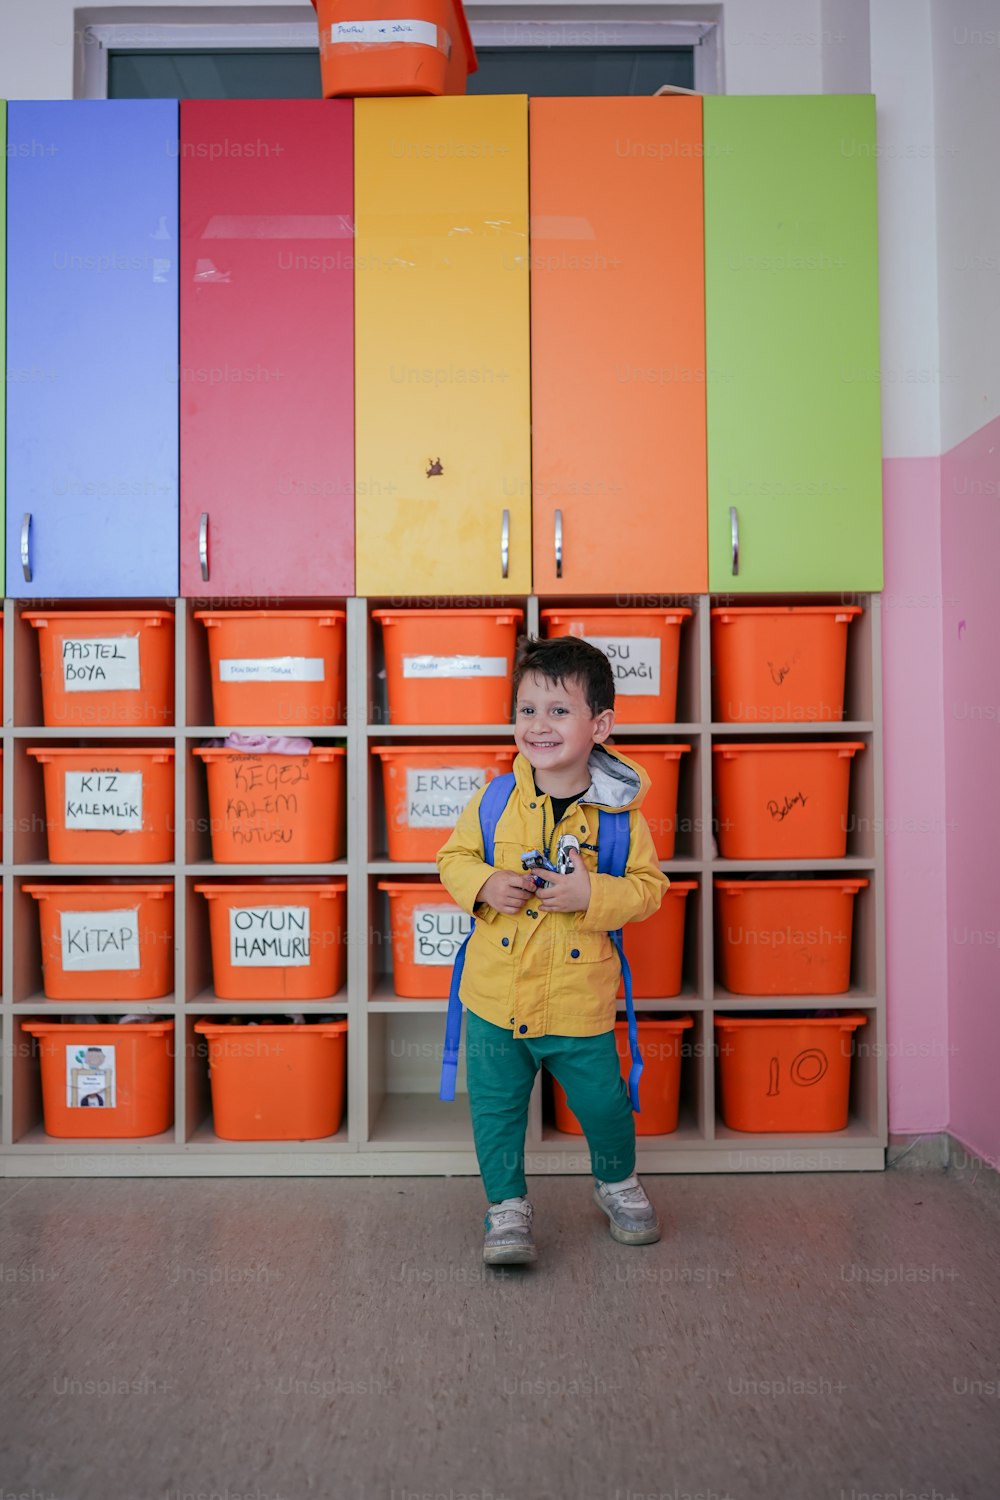 Un niño parado frente a una pared de contenedores de colores